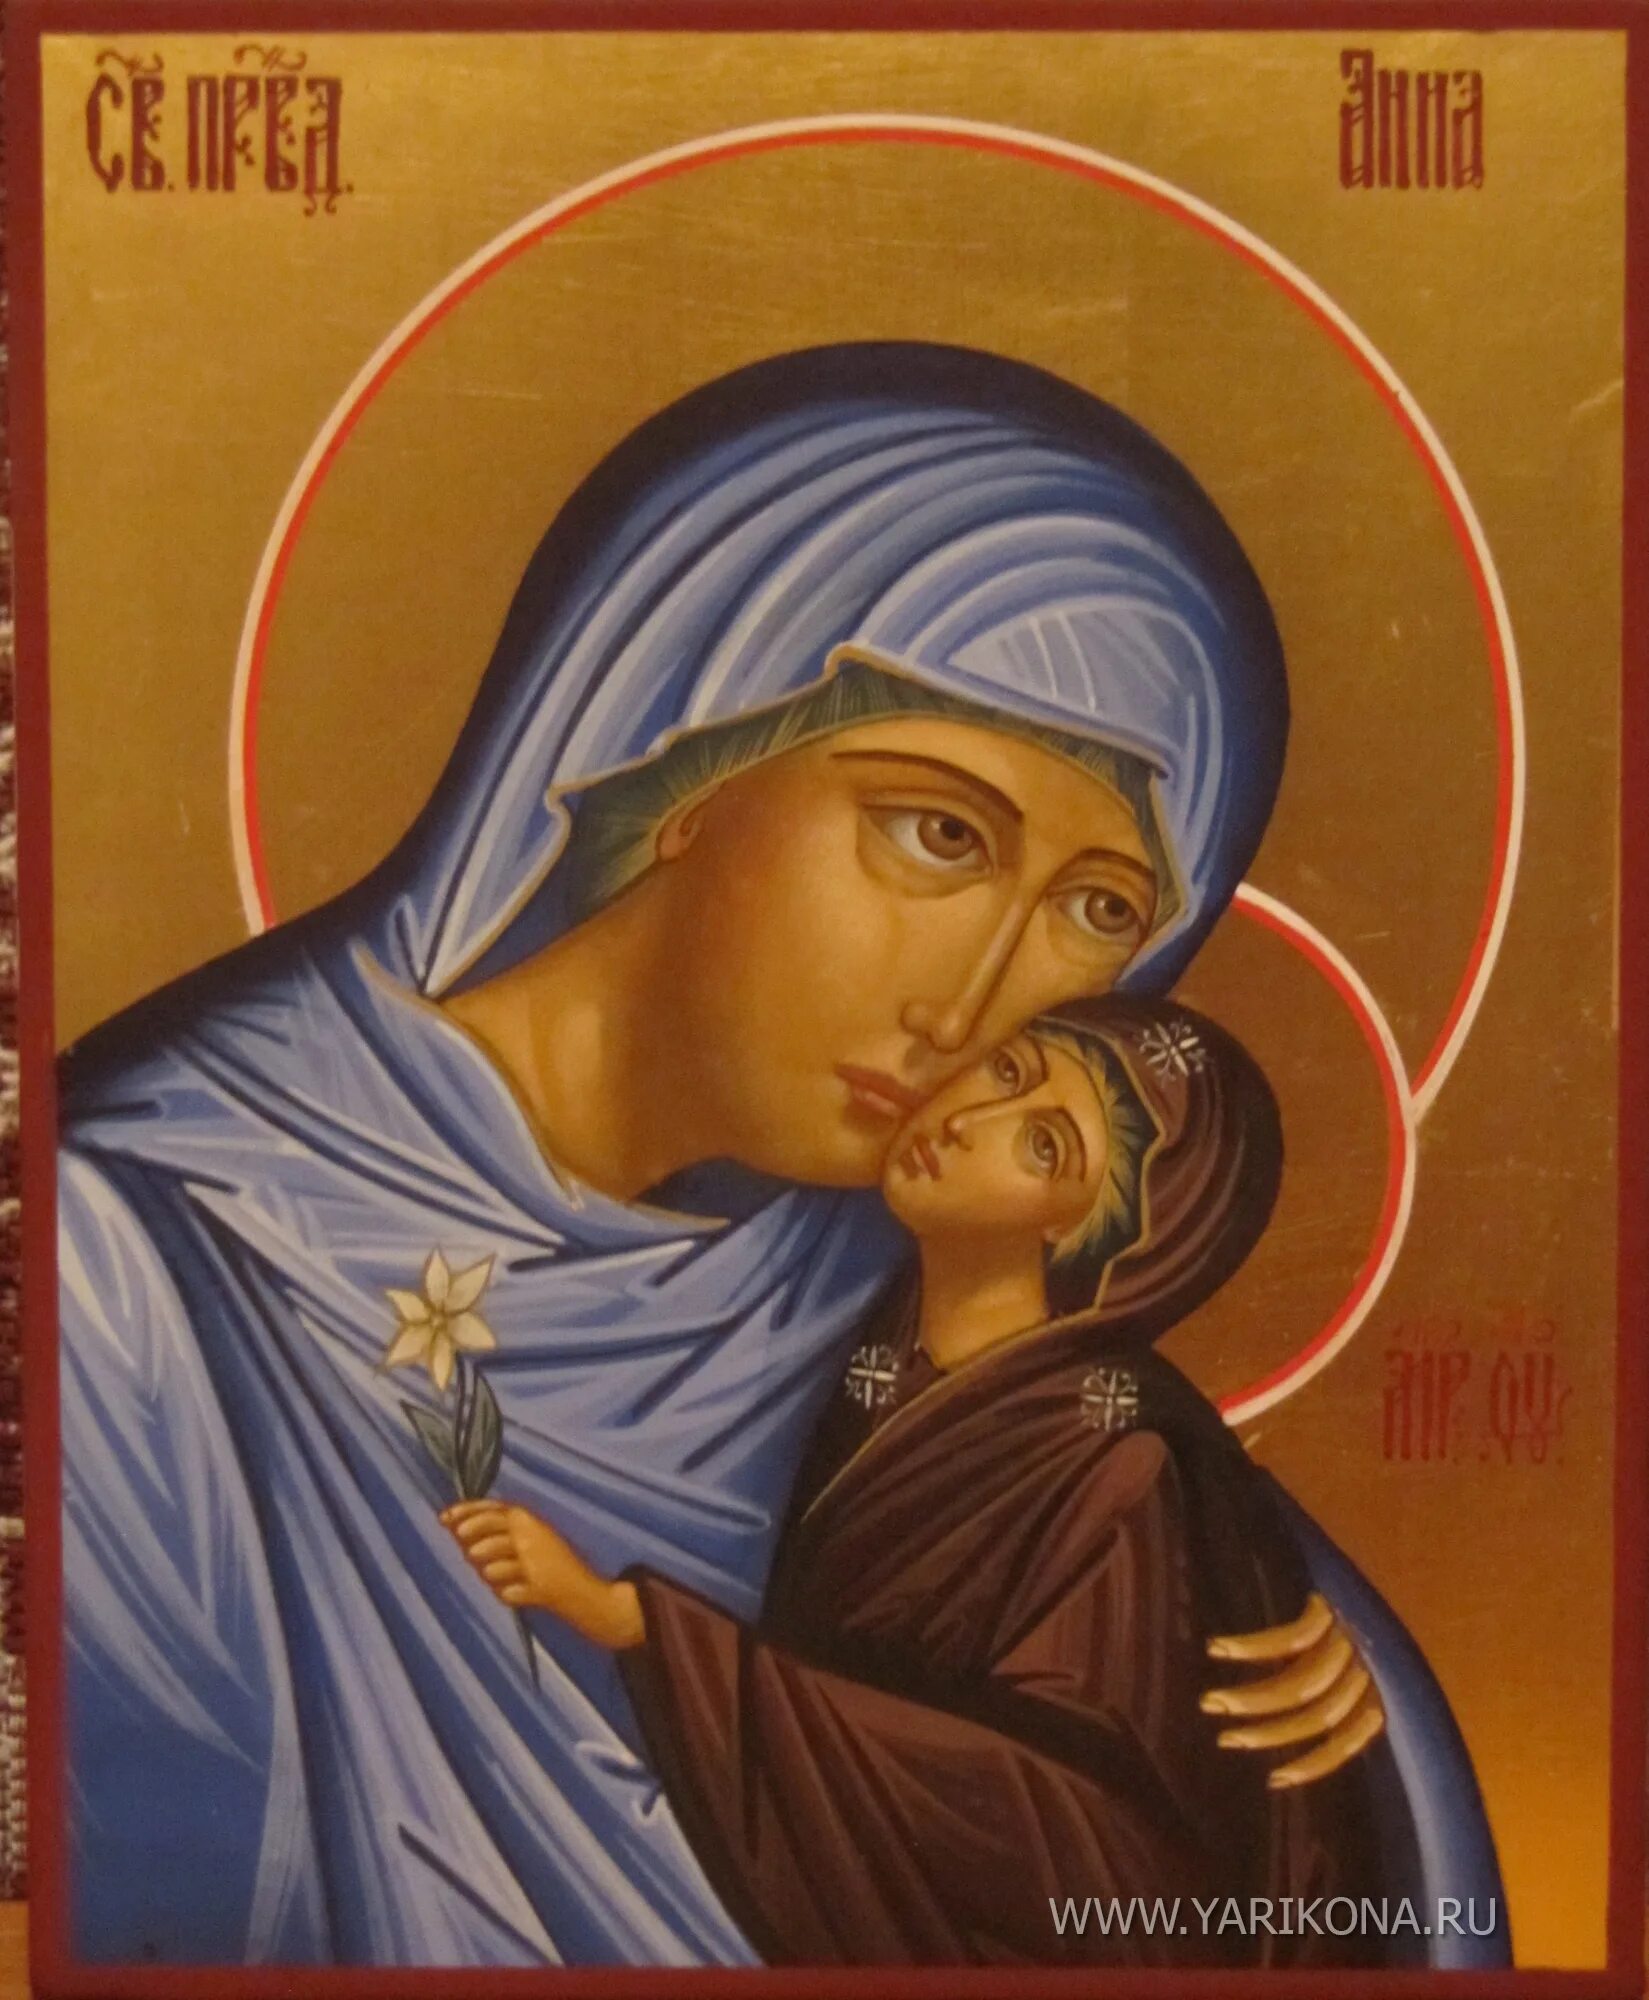 Мать святой анны. SV Pravednaya Anna. Икона св праведной Анны матери Богородицы.